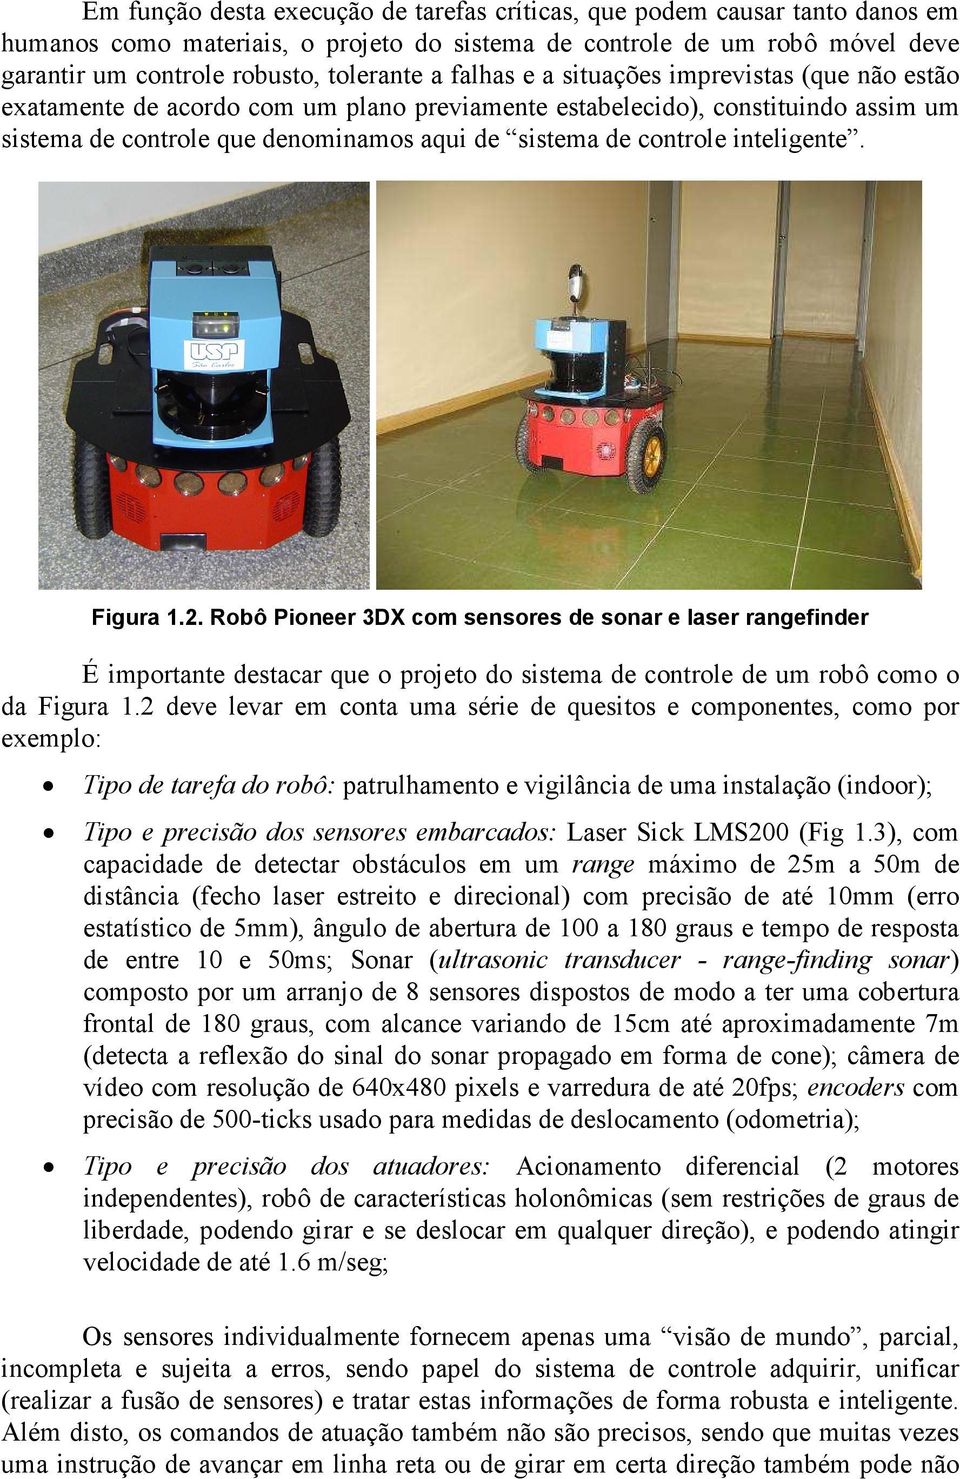 inteligente. Figura 1.2. Robô Pioneer 3DX com sensores de sonar e laser rangefinder É importante destacar que o projeto do sistema de controle de um robô como o da Figura 1.